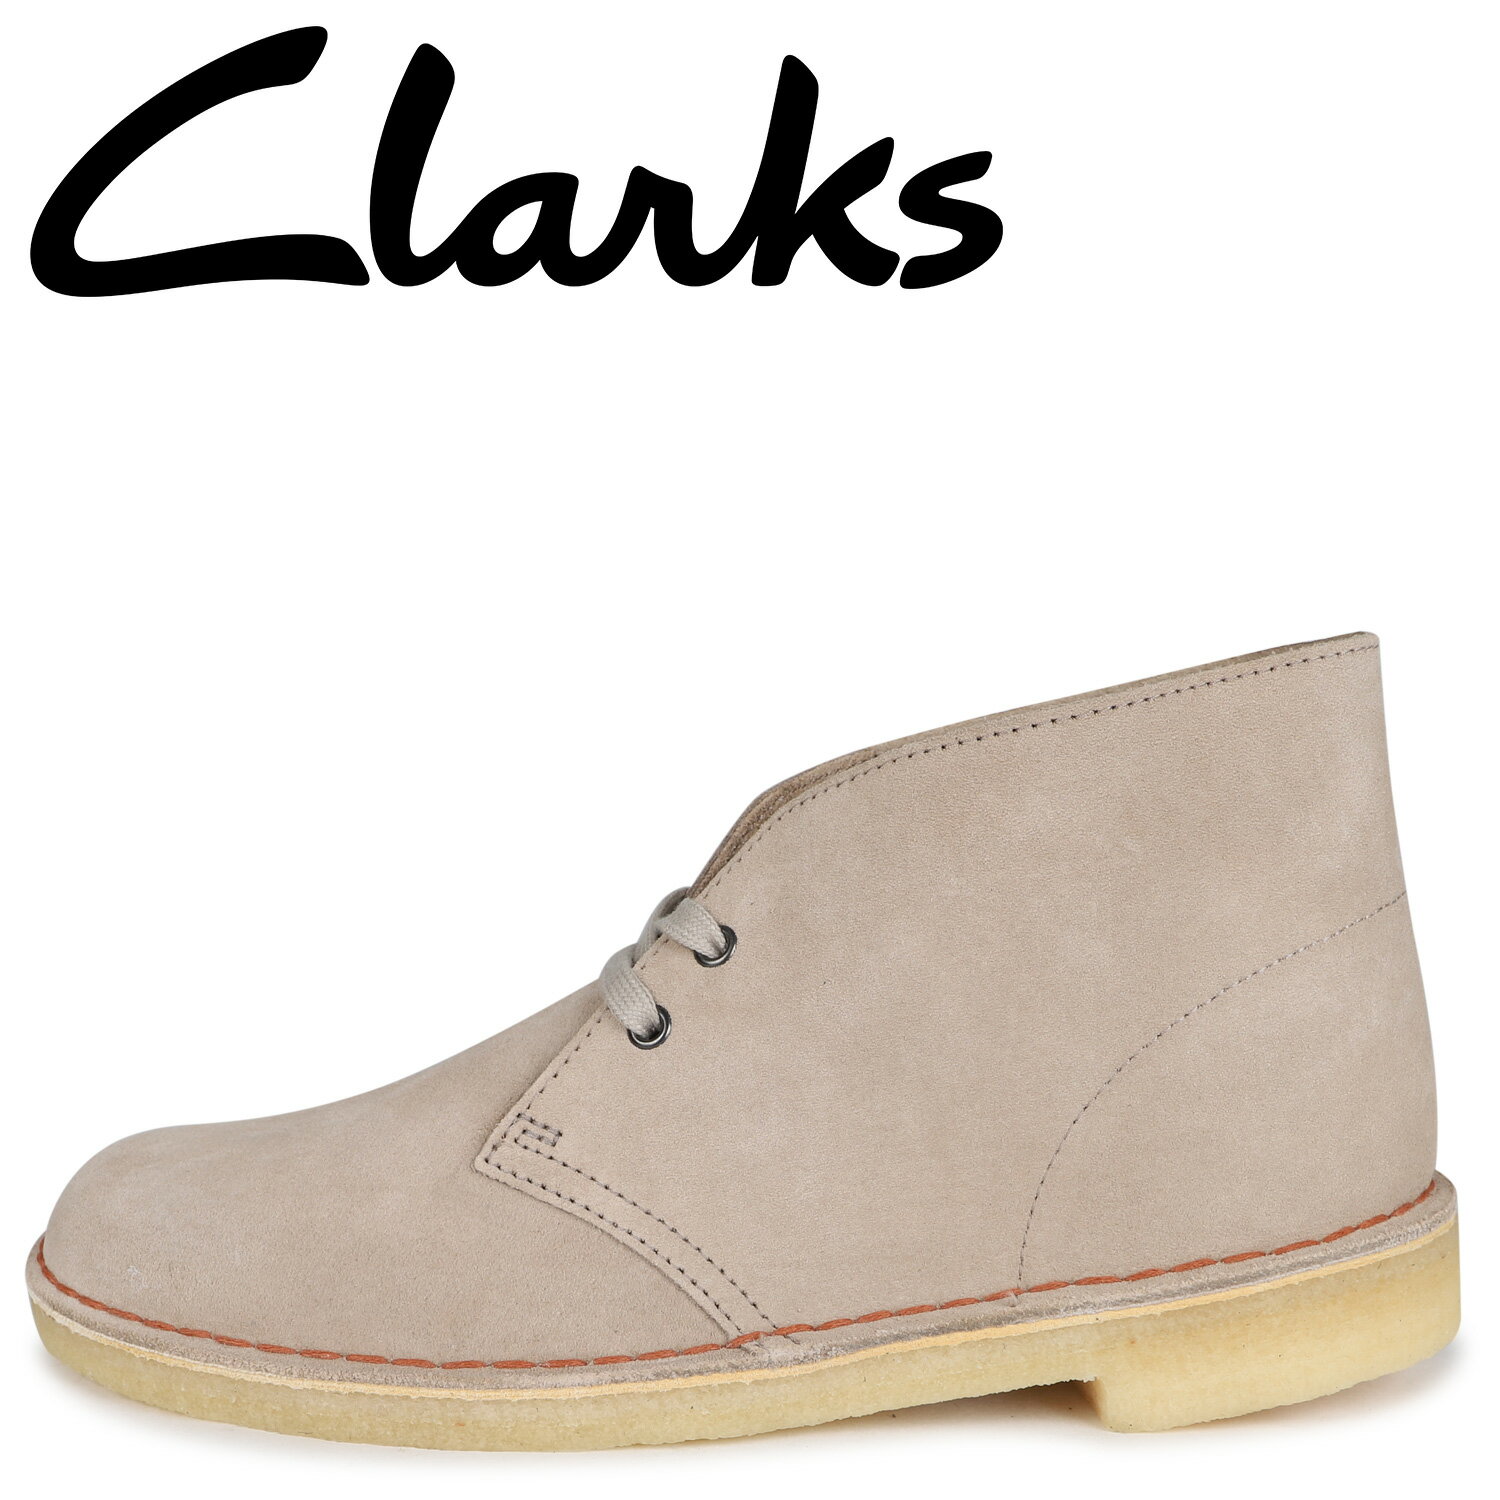 【最大1000円OFFクーポン配布中】 Clarks クラークス デザートブーツ ブーツ メンズ スエード DESERT BOOT ベージュ 26155527